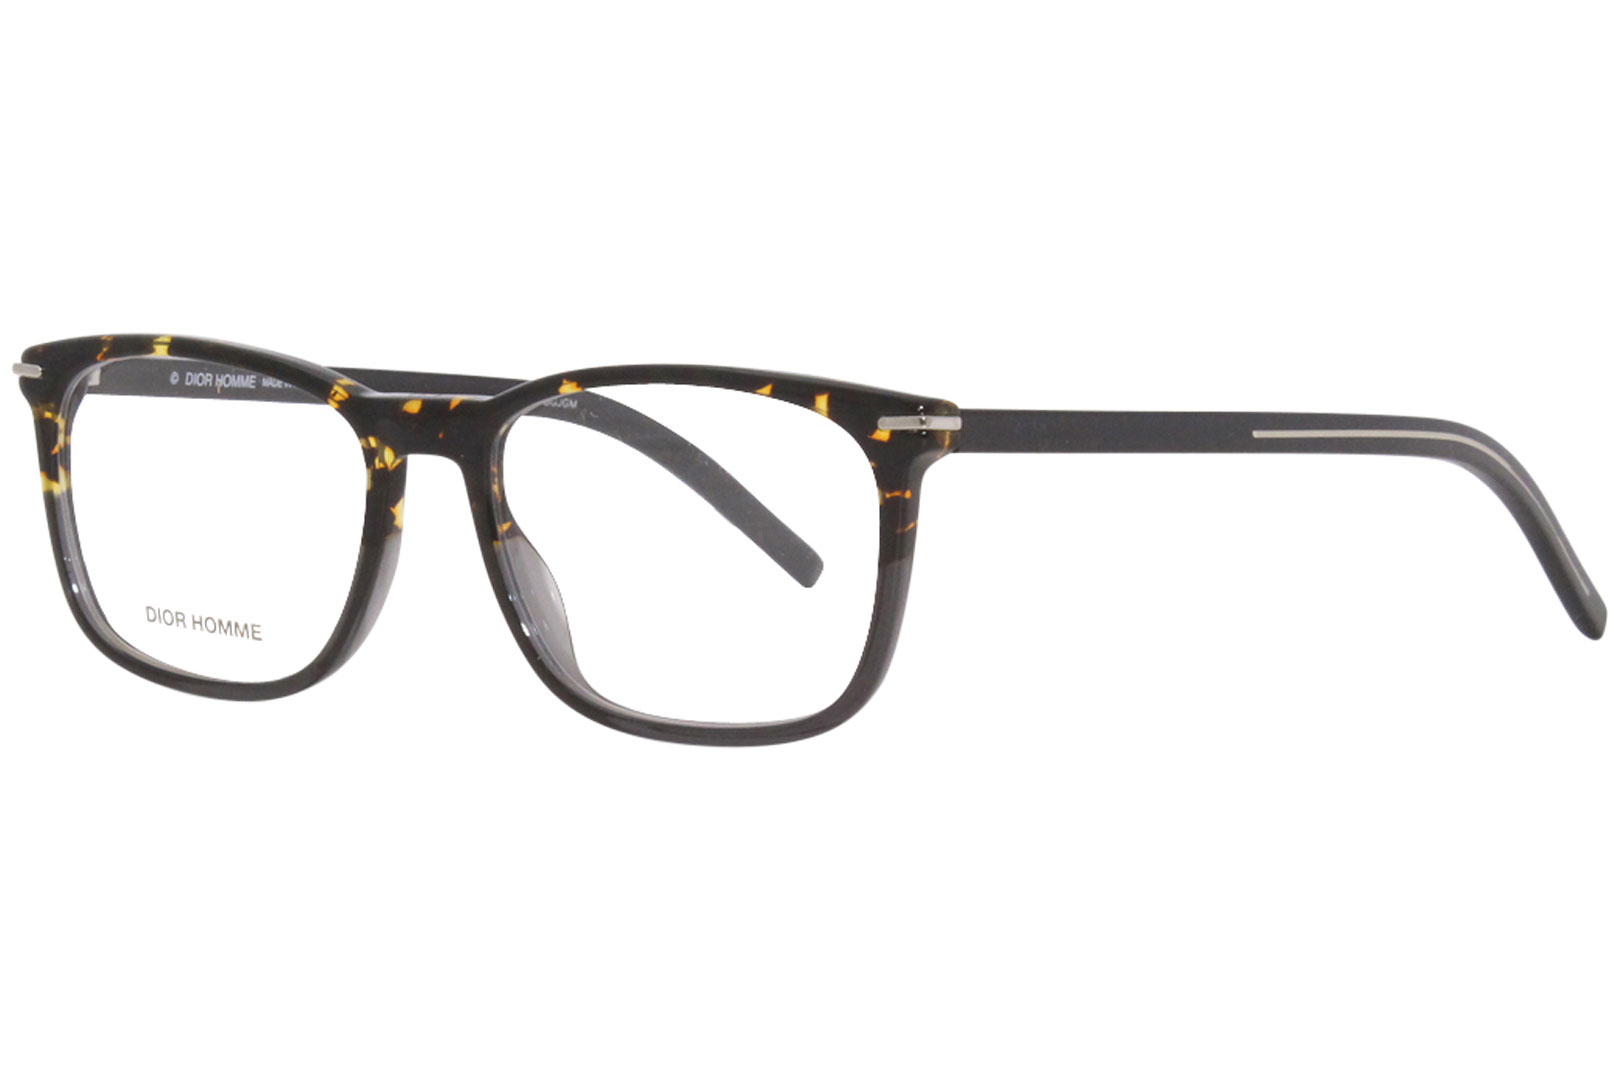 Dior Homme Eyeglasses Men's Blacktie265 AB8 Havana 52-18-150mm ...